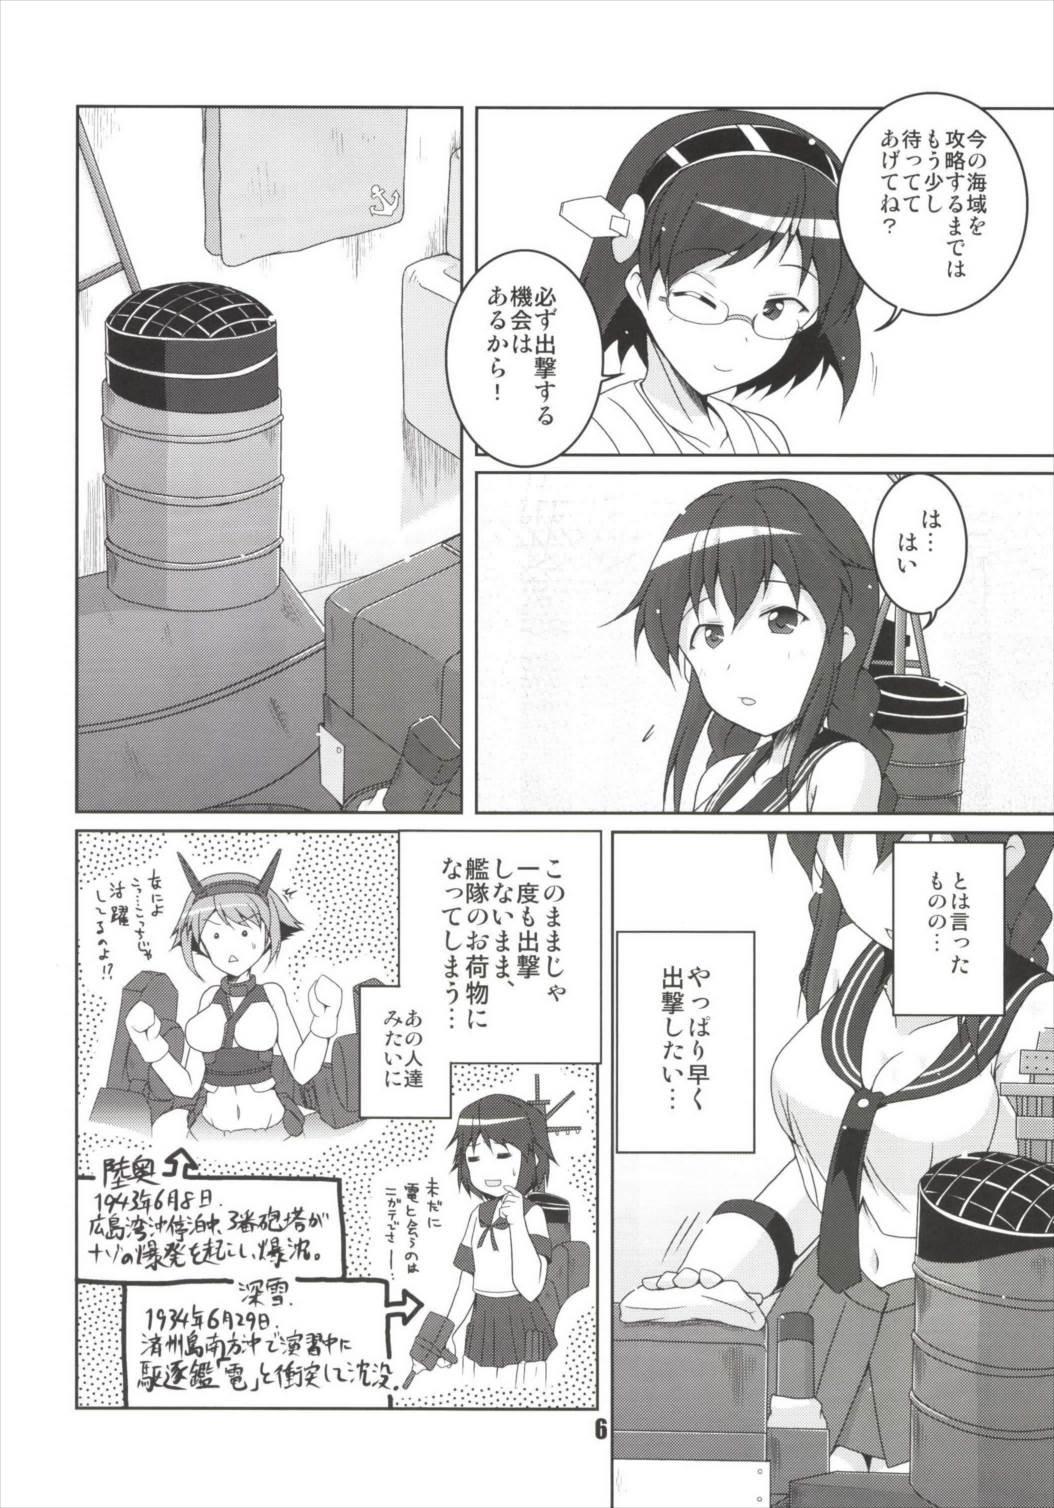 Exgirlfriend Noshiro no Deban wa Mada desu ka? - Kantai collection Gapes Gaping Asshole - Page 6